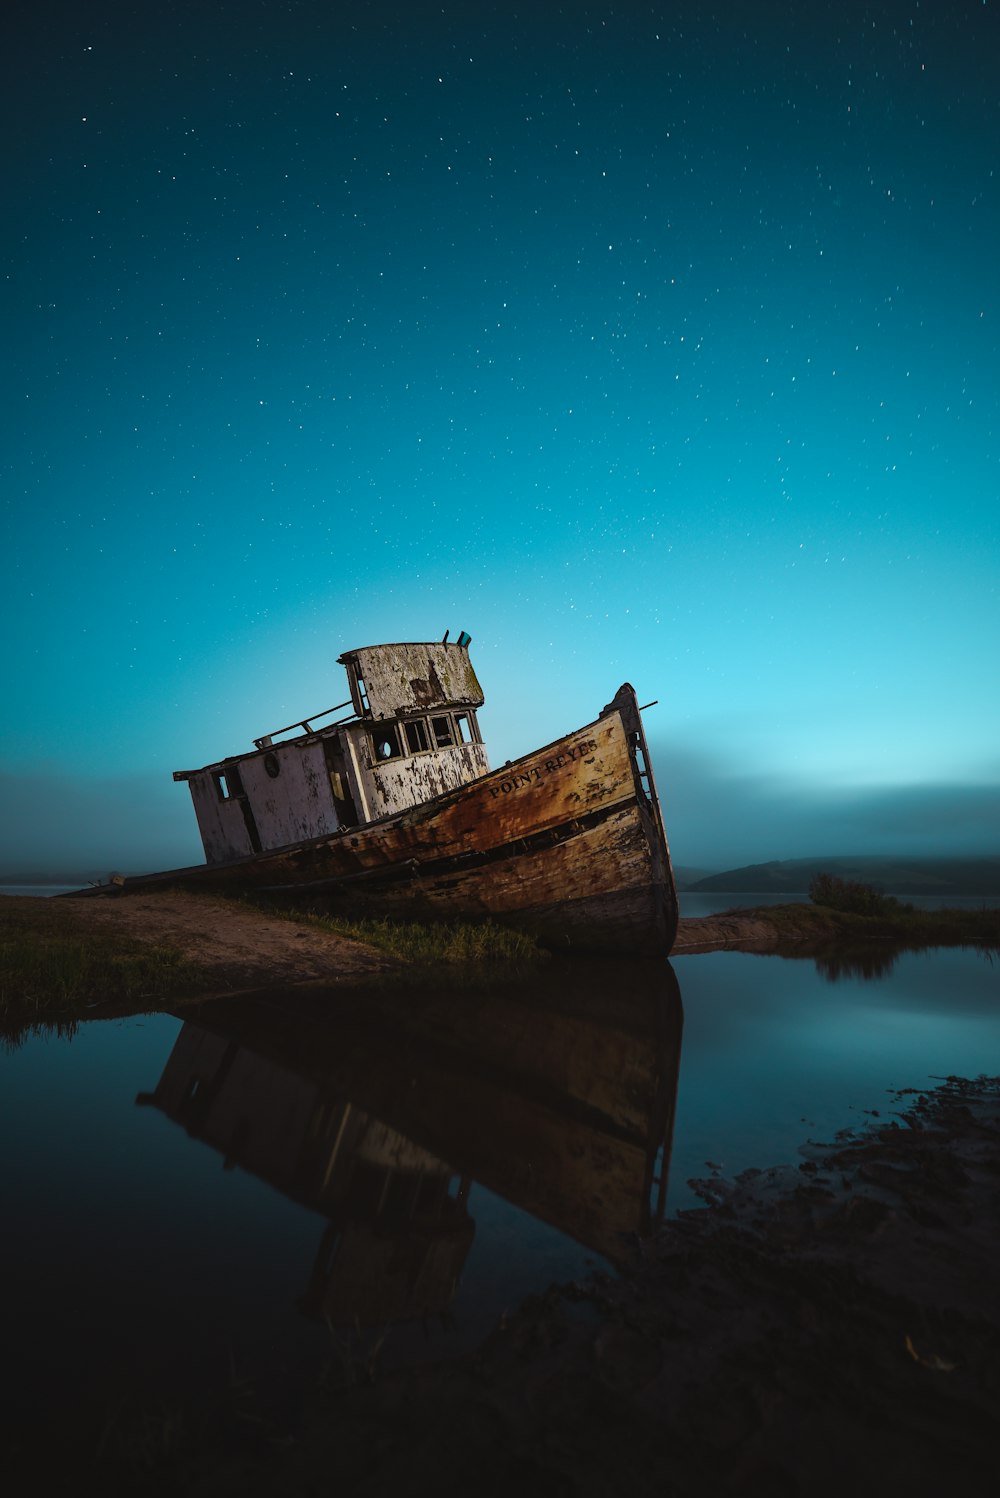 barco abandonado en la orilla del mar bajo el cielo con estrellas